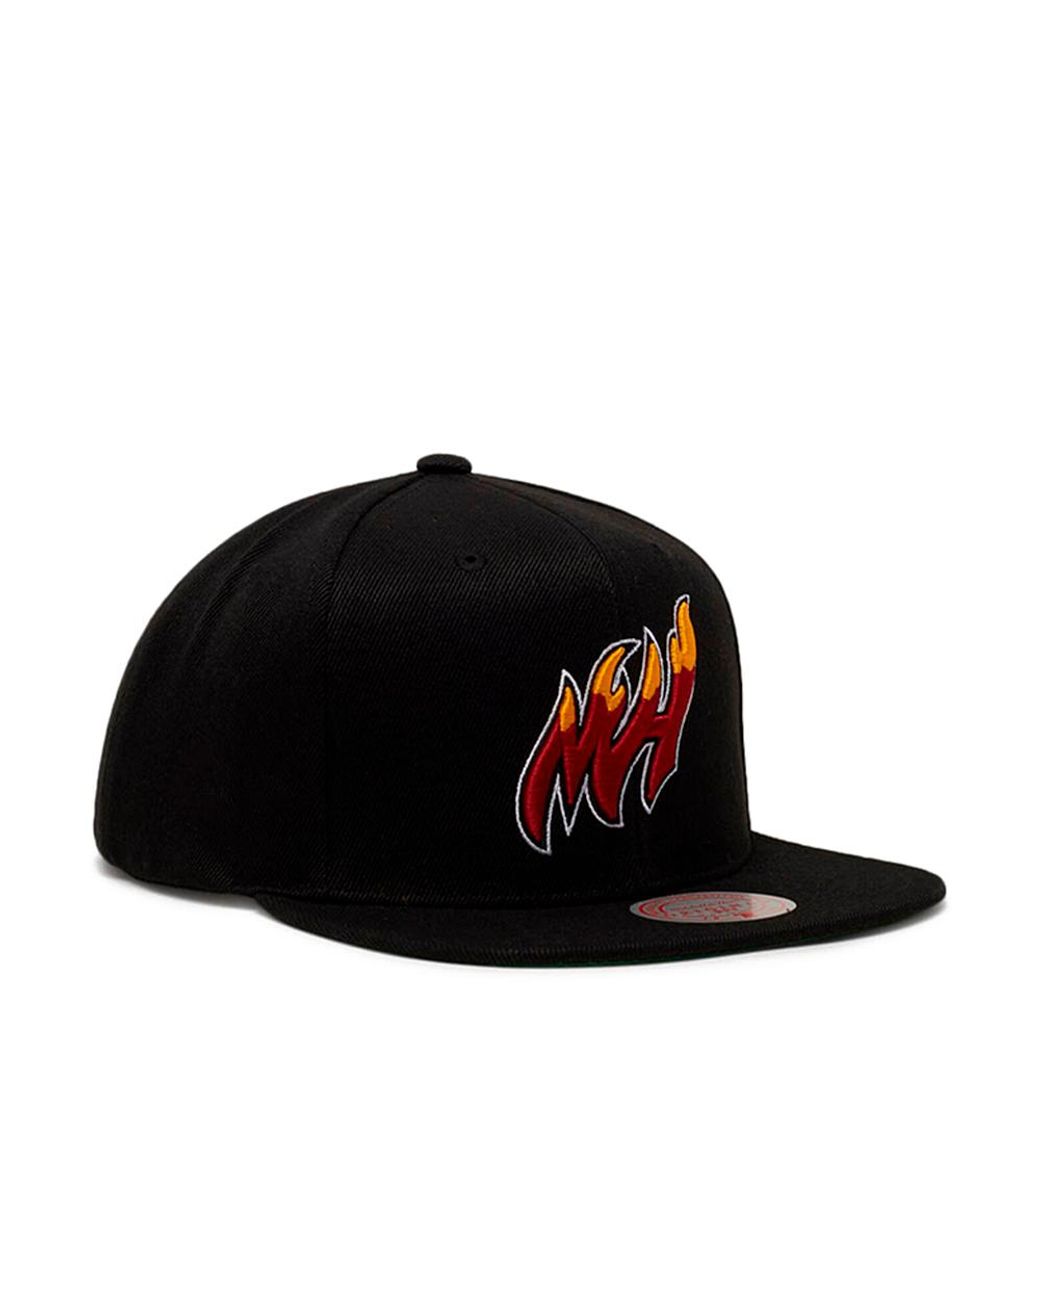 Miami Heat Mitchell & Ness 2006 NBA Finals Born & Bred Snapback Hat - Black